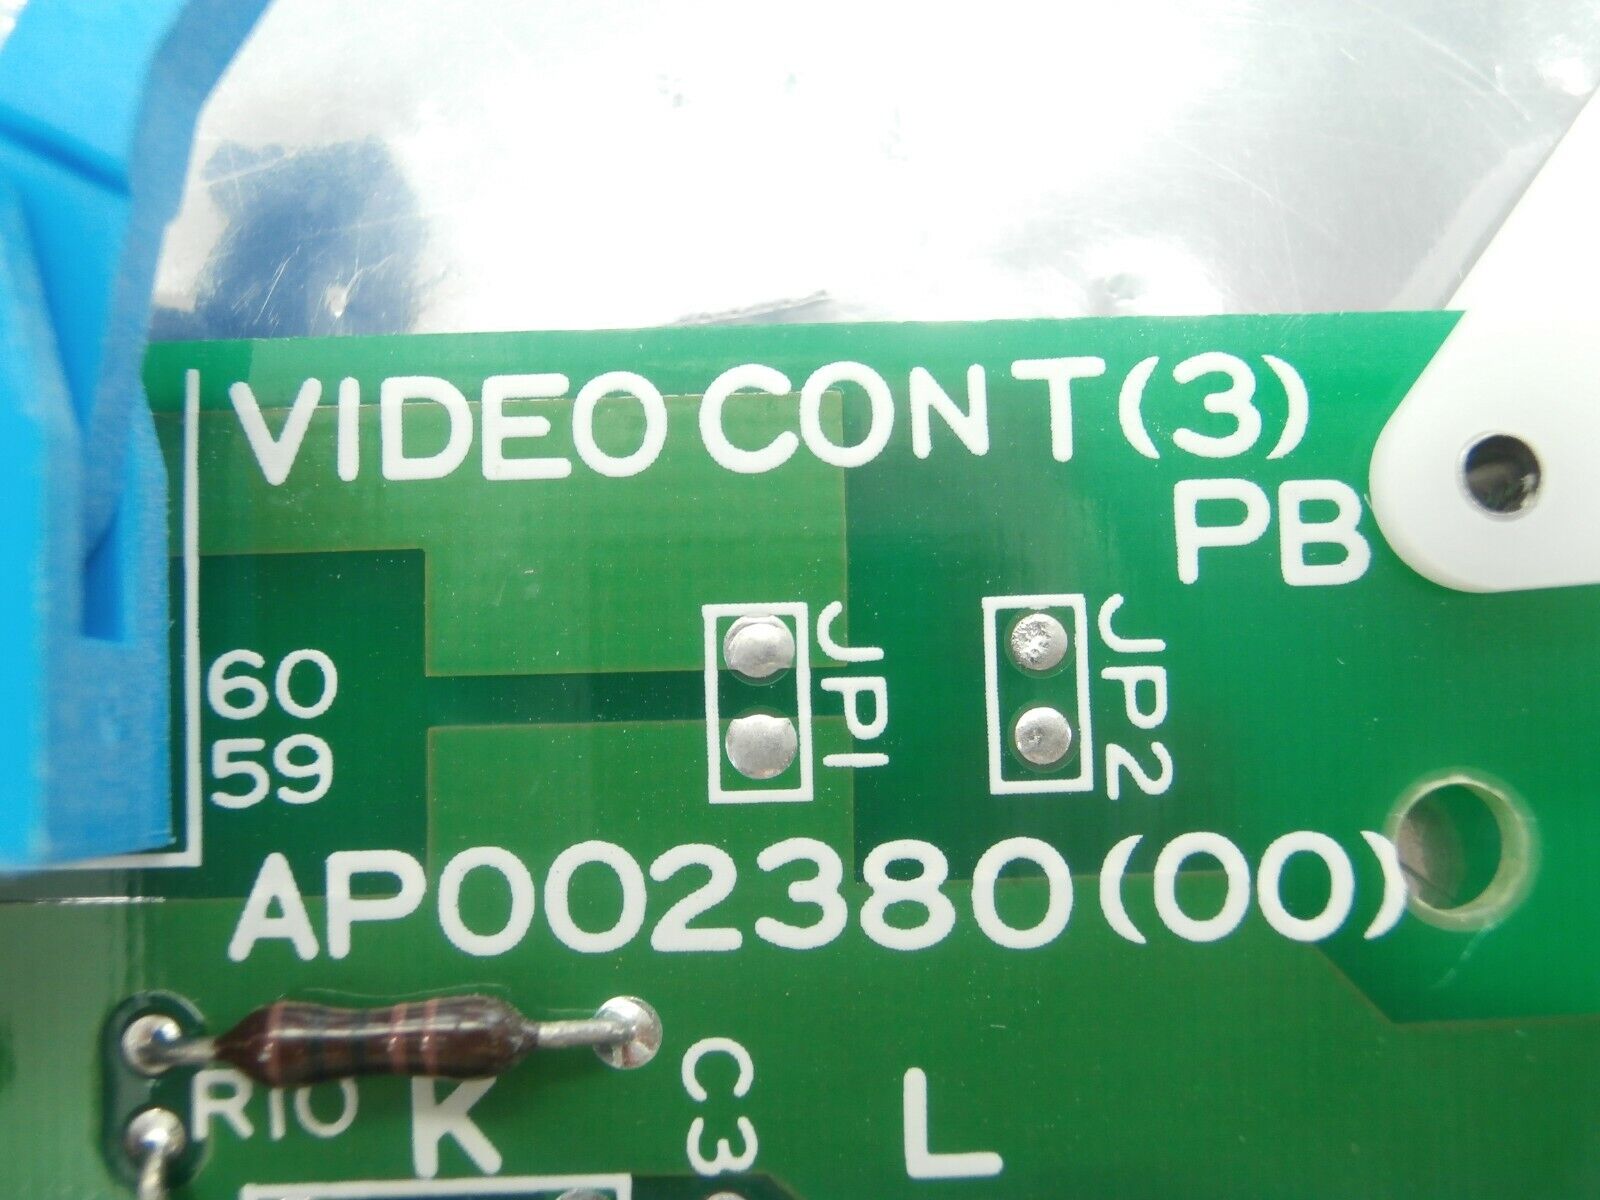 JEOL AP002380(00) Processor Board PCB Card VIDEO CONT(3)PB TN JSM-6400F Used